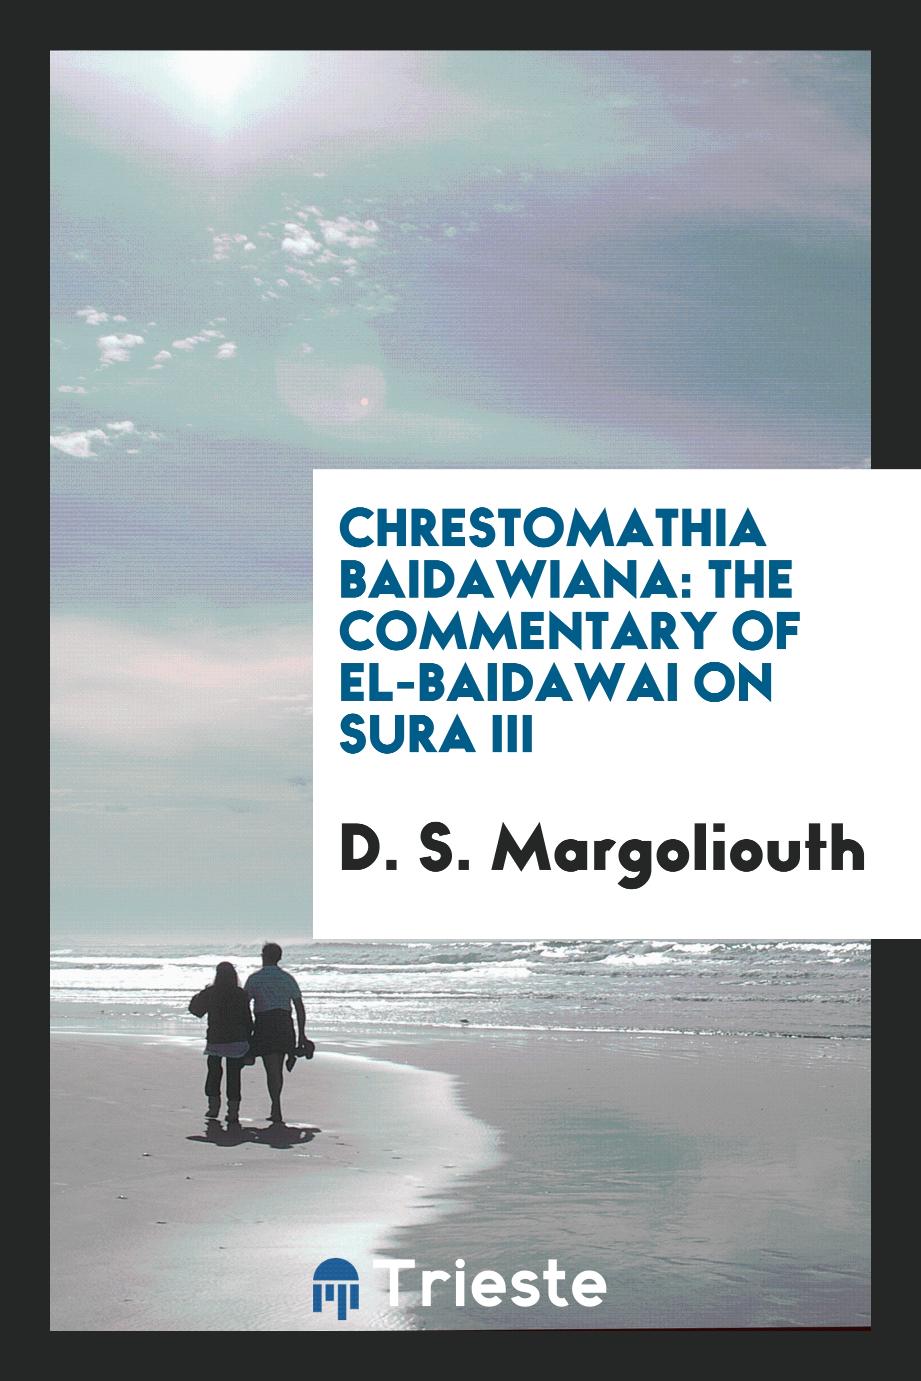 Chrestomathia Baidawiana: the commentary of el-Baidawai on Sura III